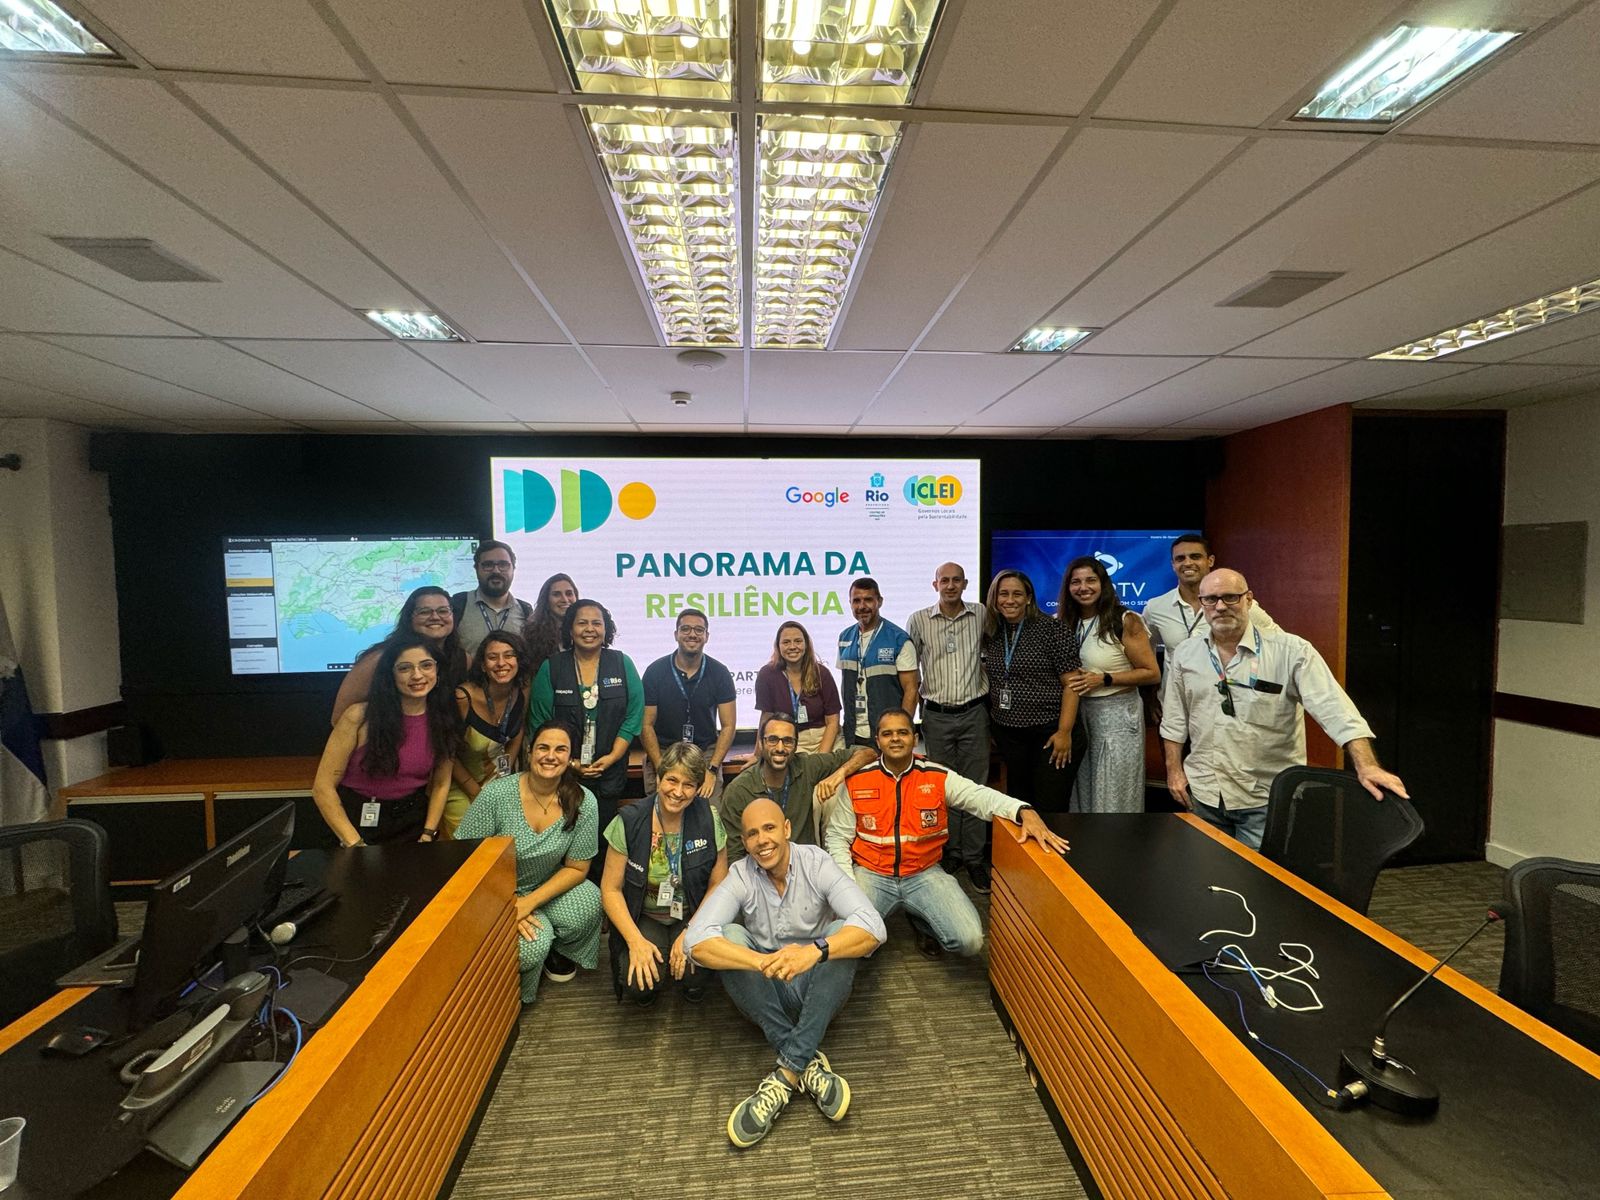 Oficina do Projeto “Panorama da Resiliência” fortalece parceria entre Rio de Janeiro, Google e ICLEI América do Sul